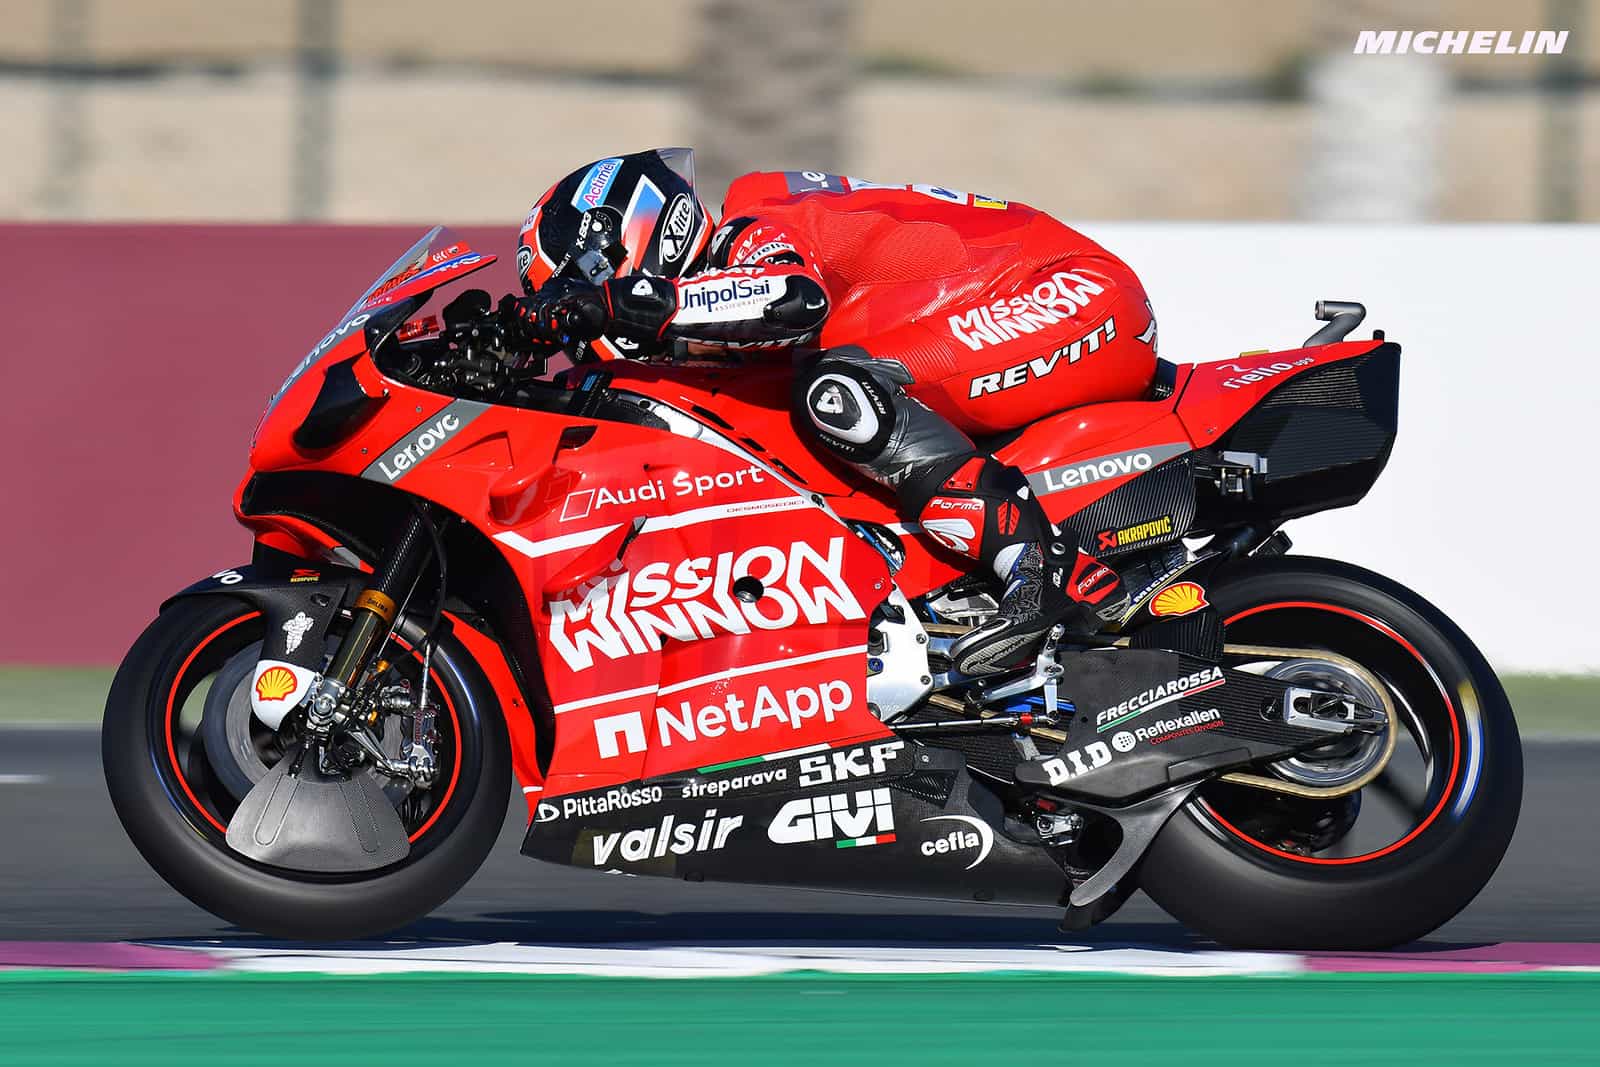 Ducatiが使用したリアのスポイラー状のパーツはレギュレーション違反ではない 気になるバイクニュース